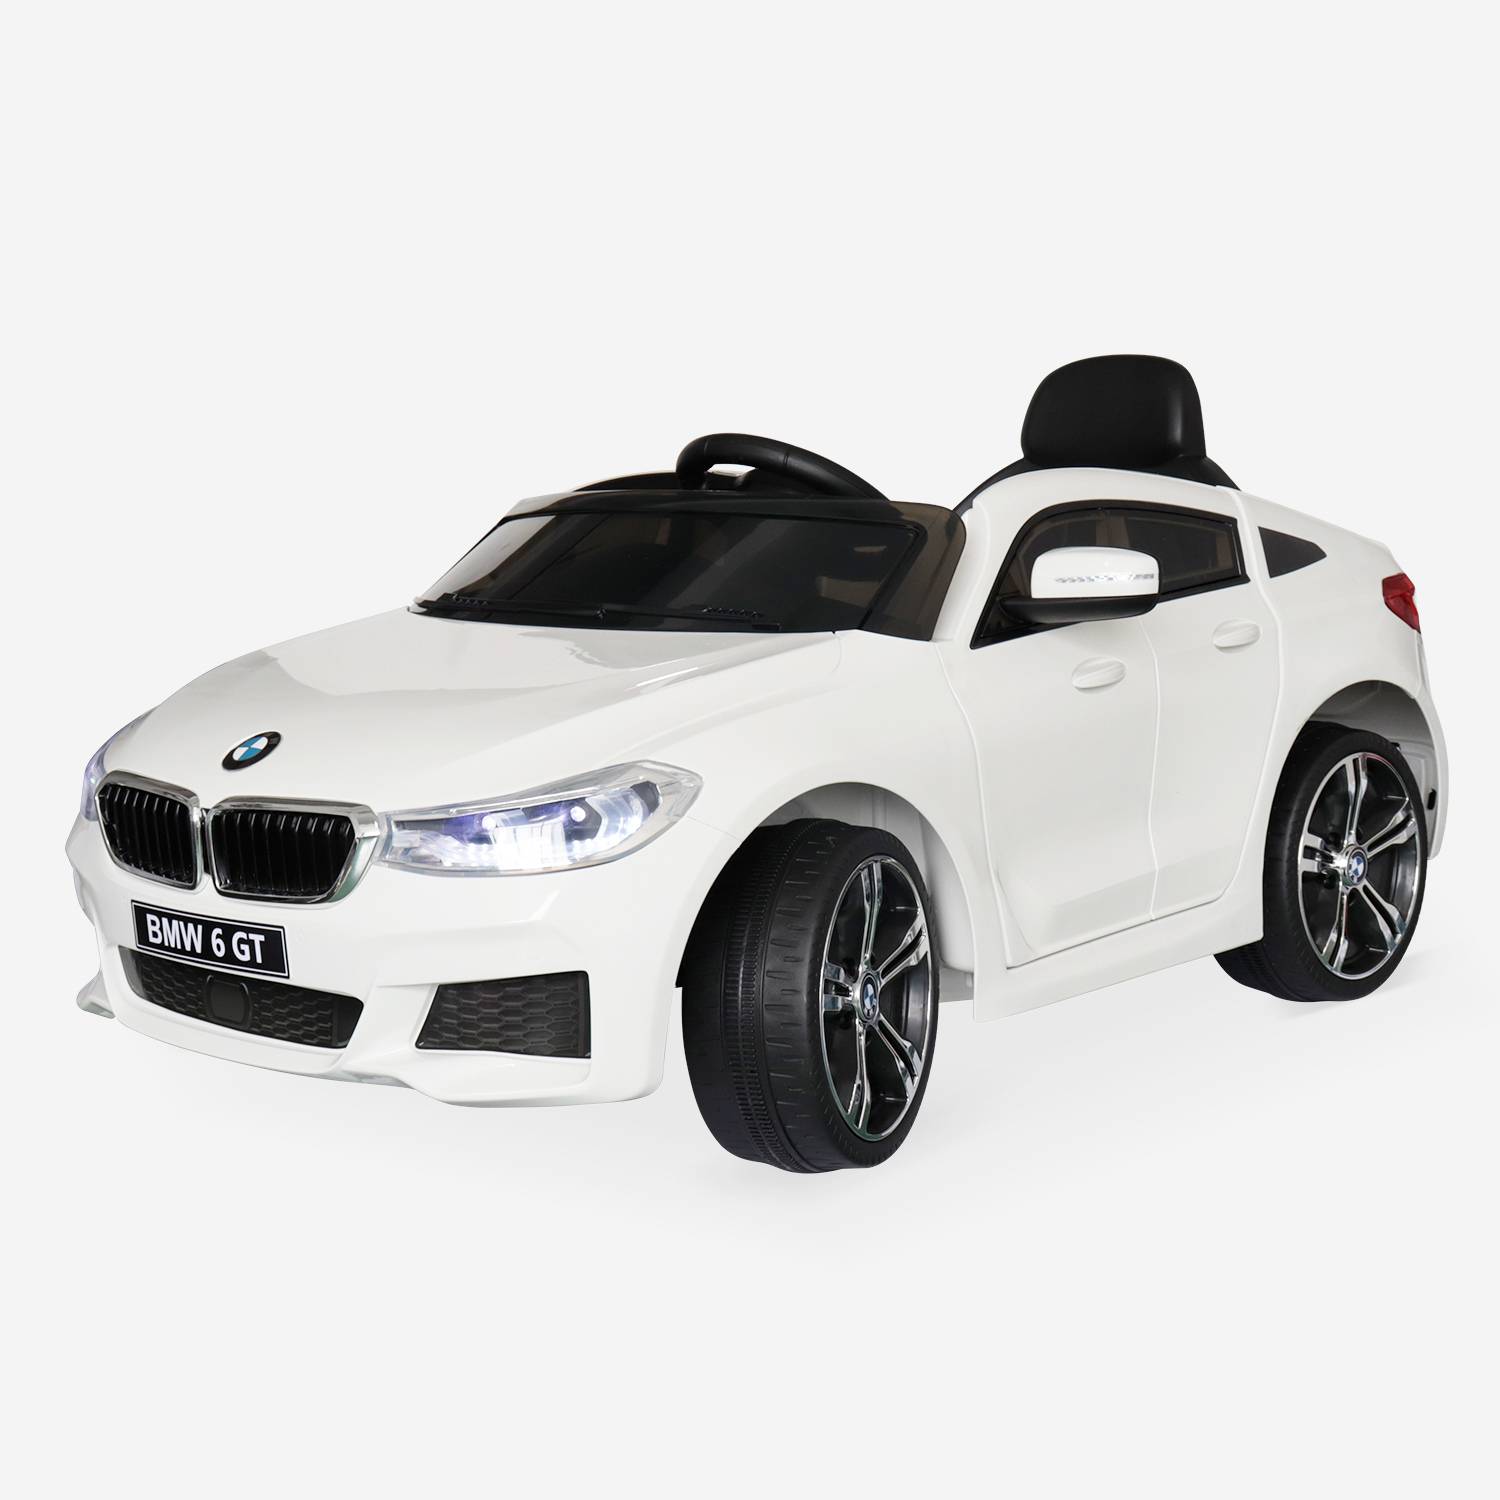 BMW Serie 6 GT Gran Turismo Branco ,carro eléctrico infantil 12V 4 Ah, 1 lugar , con autorradio y controle remoto. Photo2